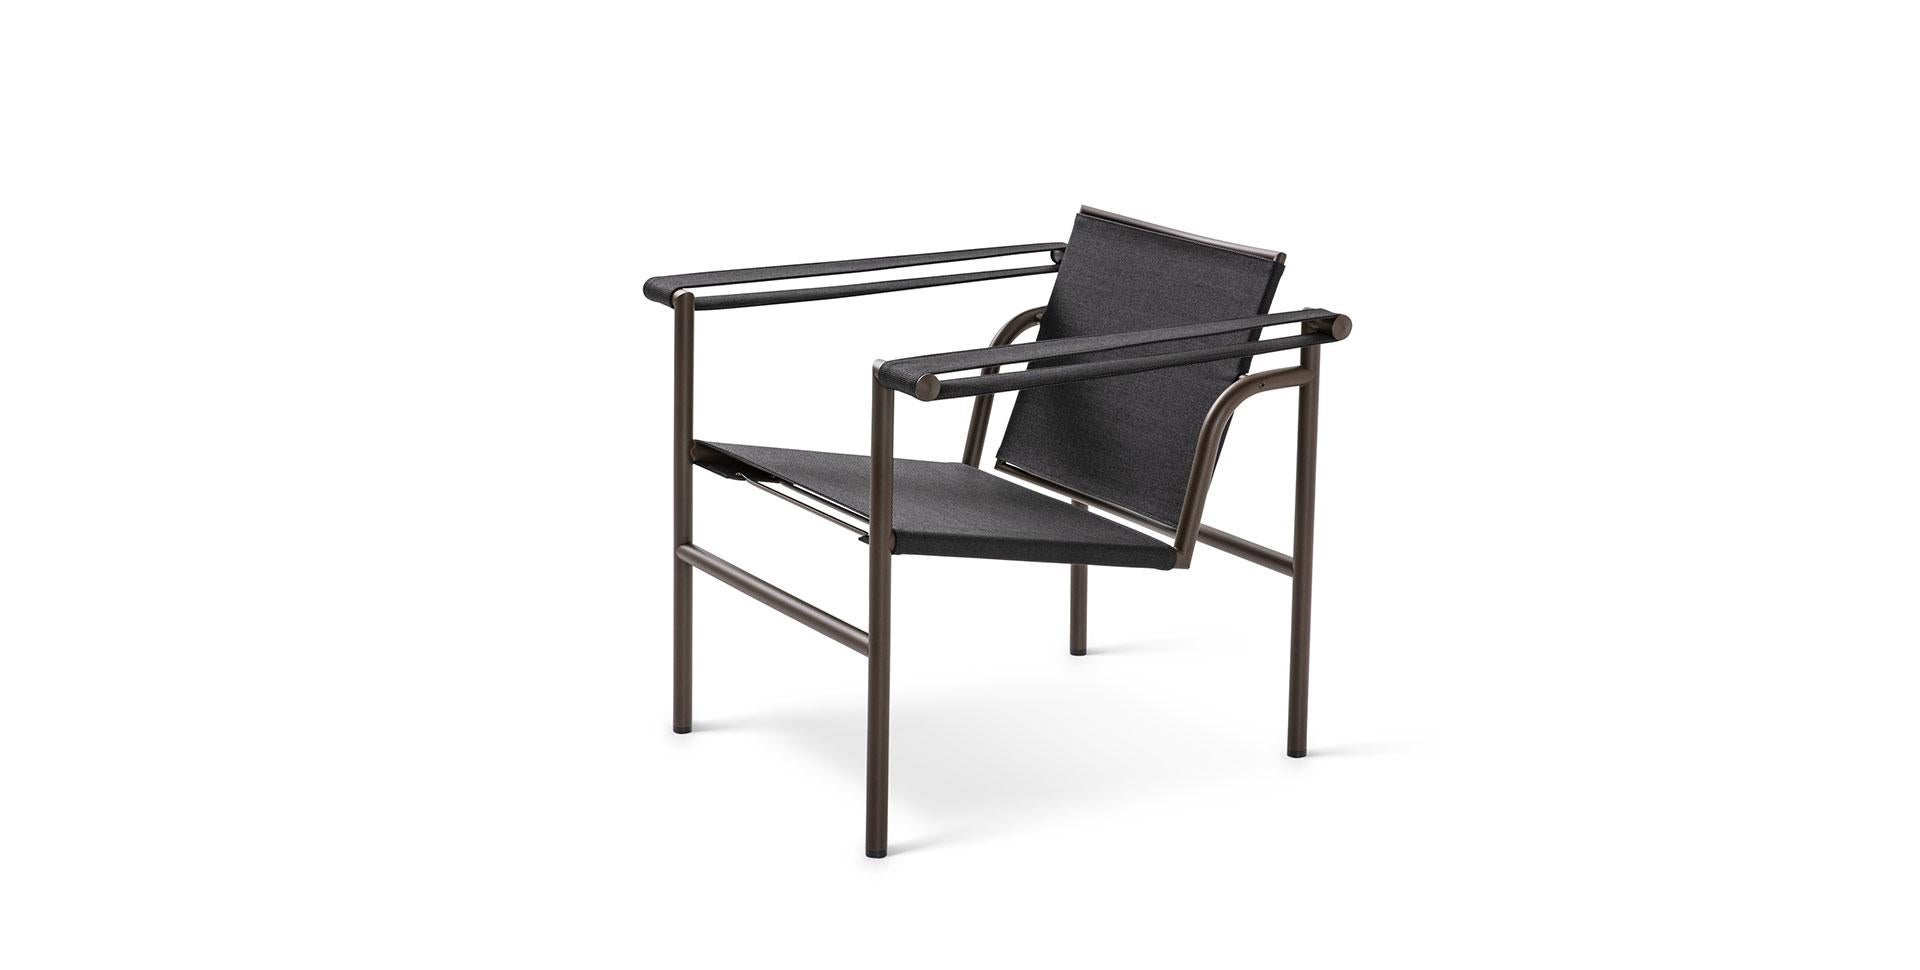 Chaise conçue par Le Corbusier, Pierre Jeanneret, Charlotte Perriand en 1928. Relancé en 2019.
Fabriqué par Cassina en Italie.

Une chaise légère et compacte conçue et présentée au Salon d'Automne de 1929 avec d'autres modèles importants, tels que